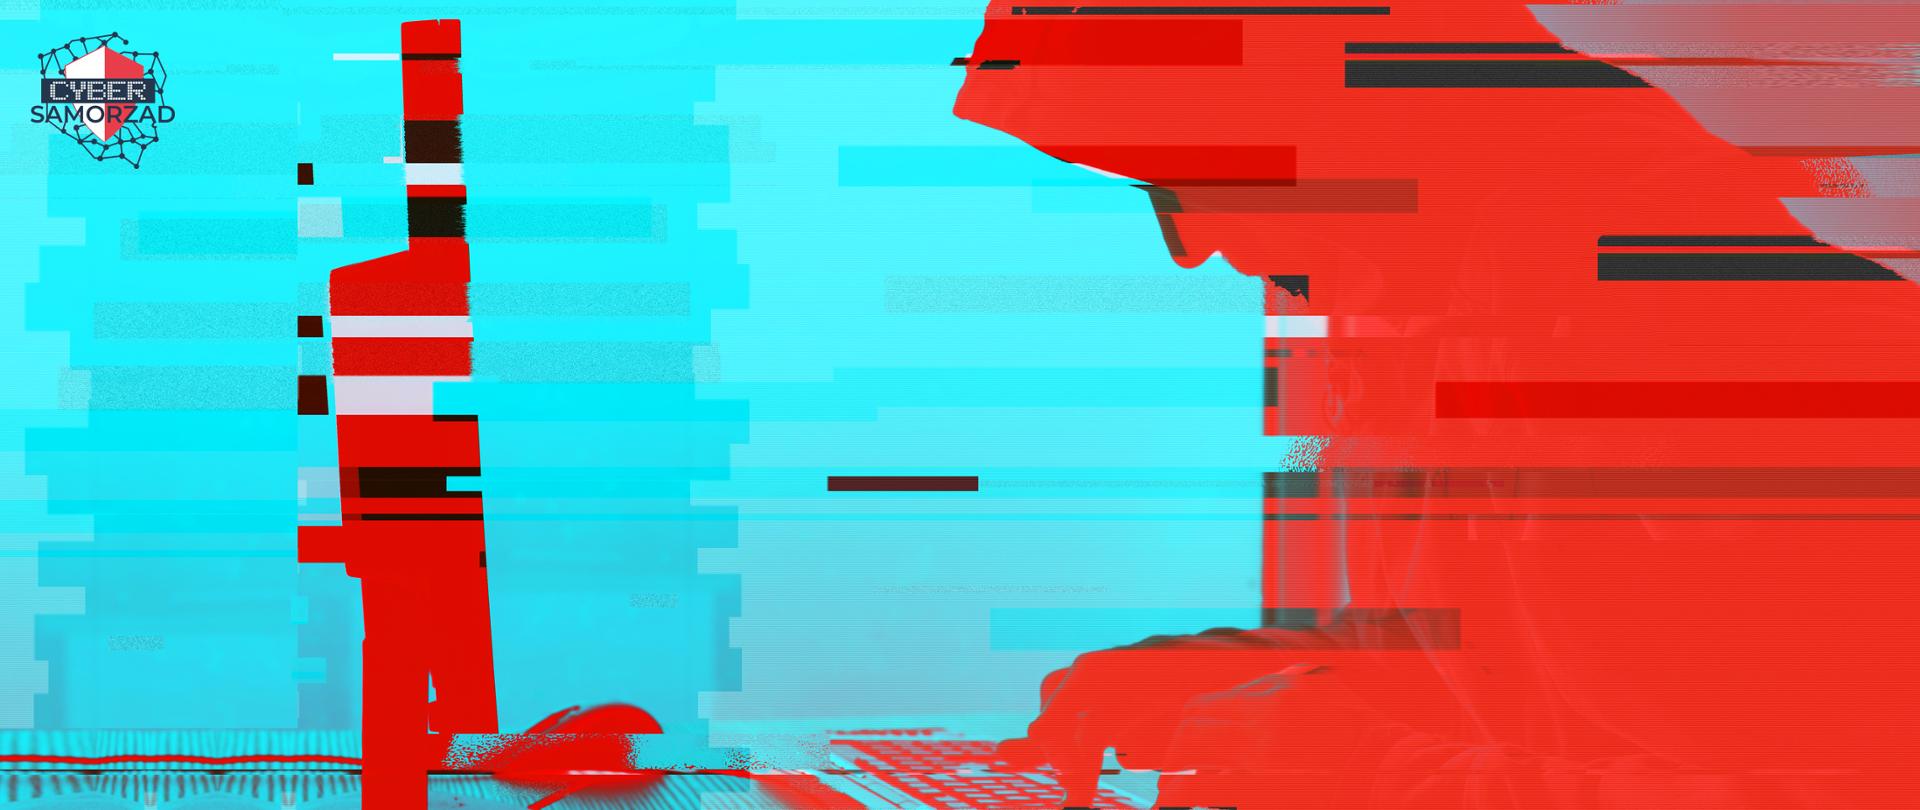 Niebiesko-czerwone zdjęcie hakera pracującego przy komputerze. W lewym górnym rogu logo CyberSamorząd.